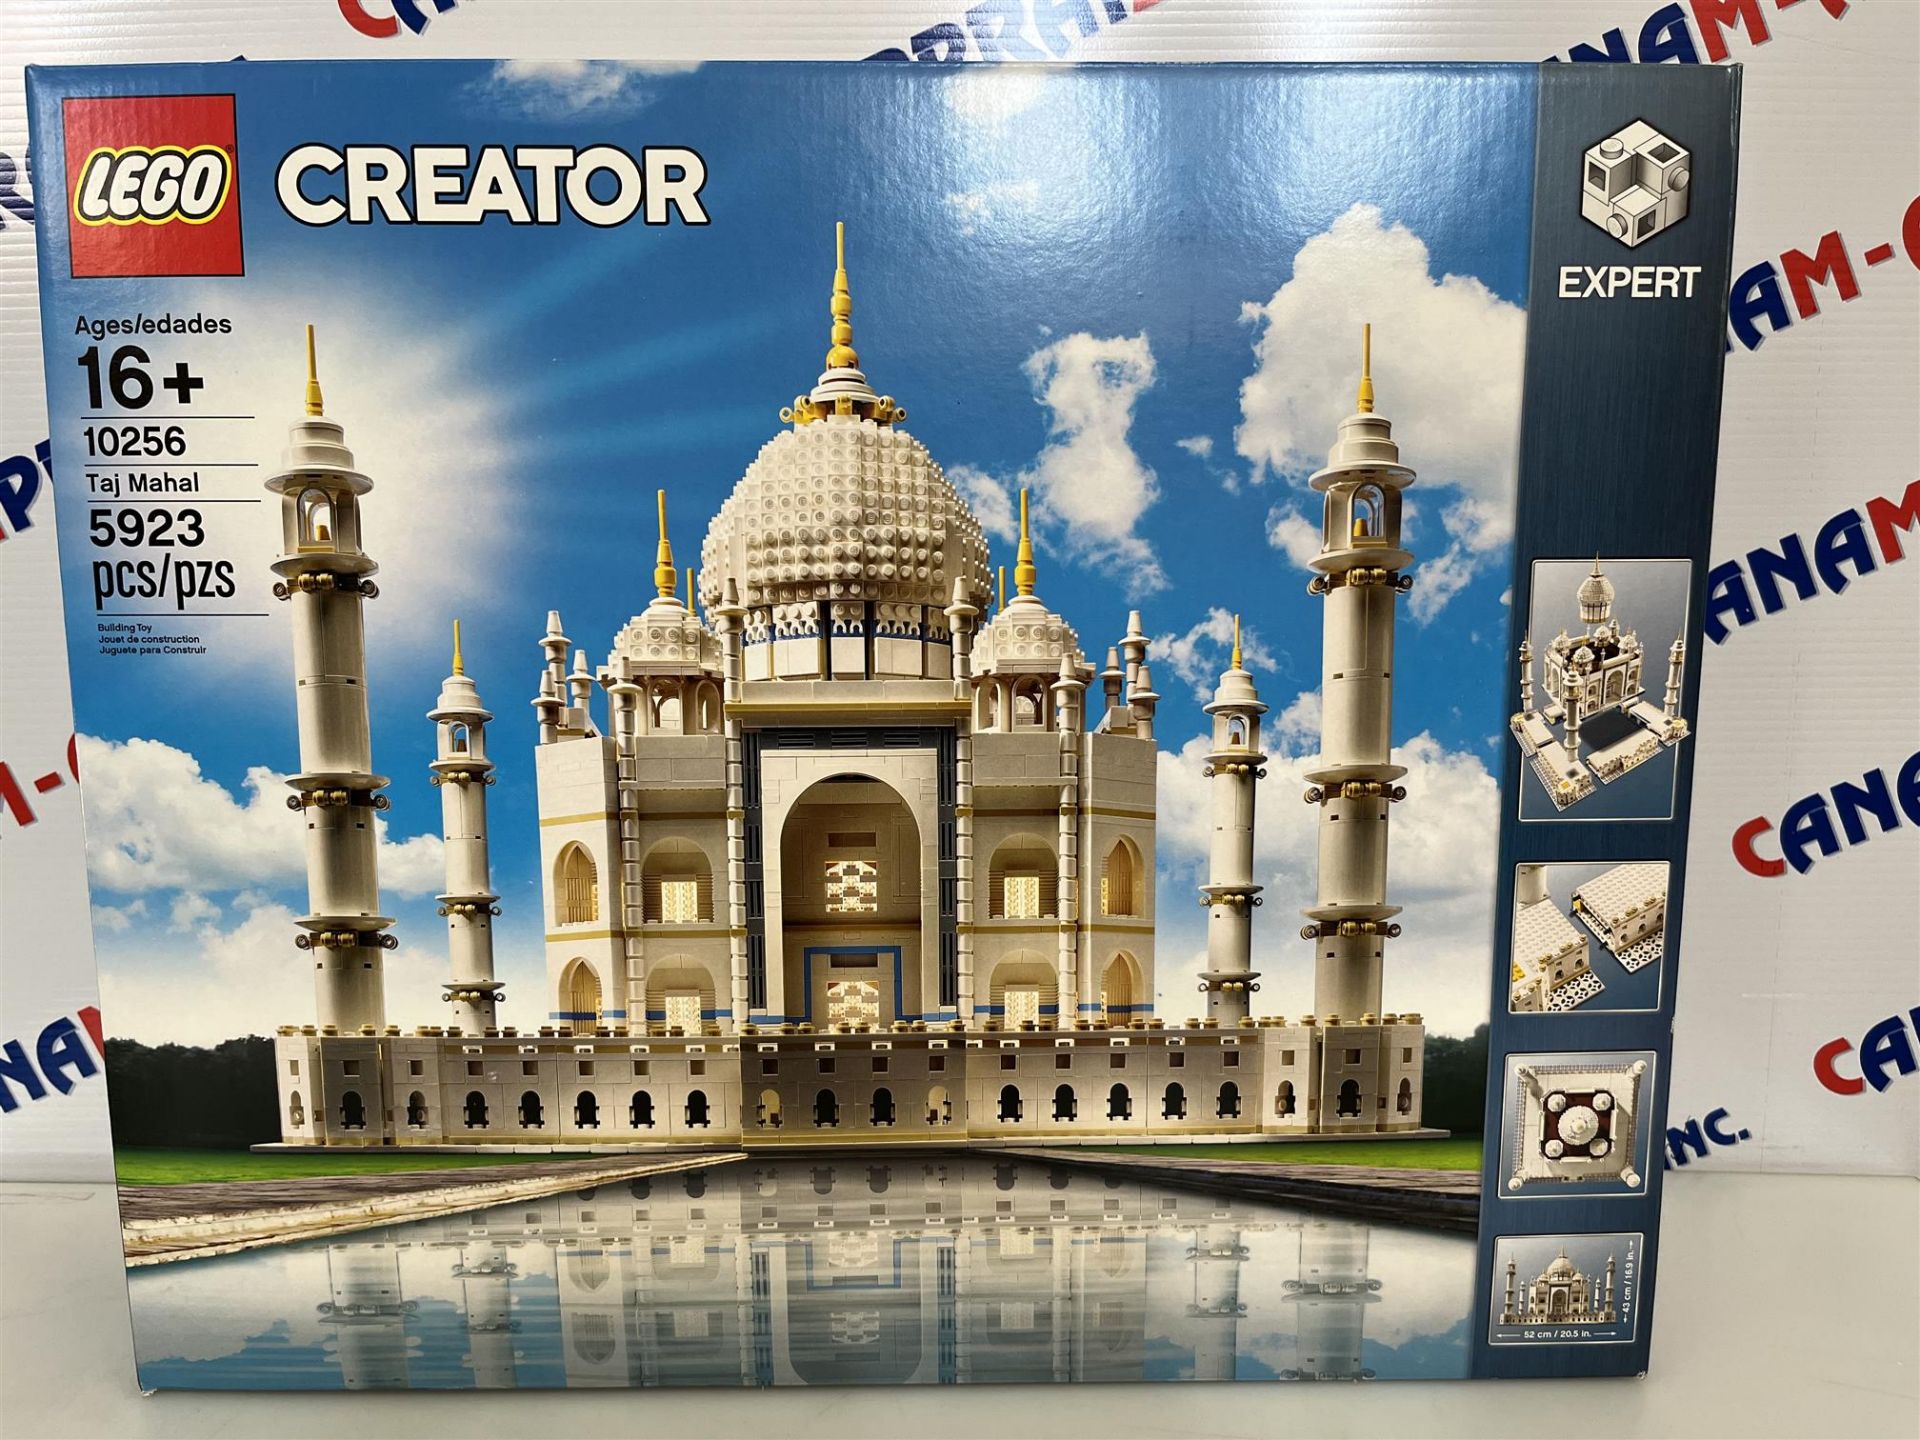 Lego Creator 10256 Taj Mahal- Ages 16+ - 5923 PCS - Image 2 of 2